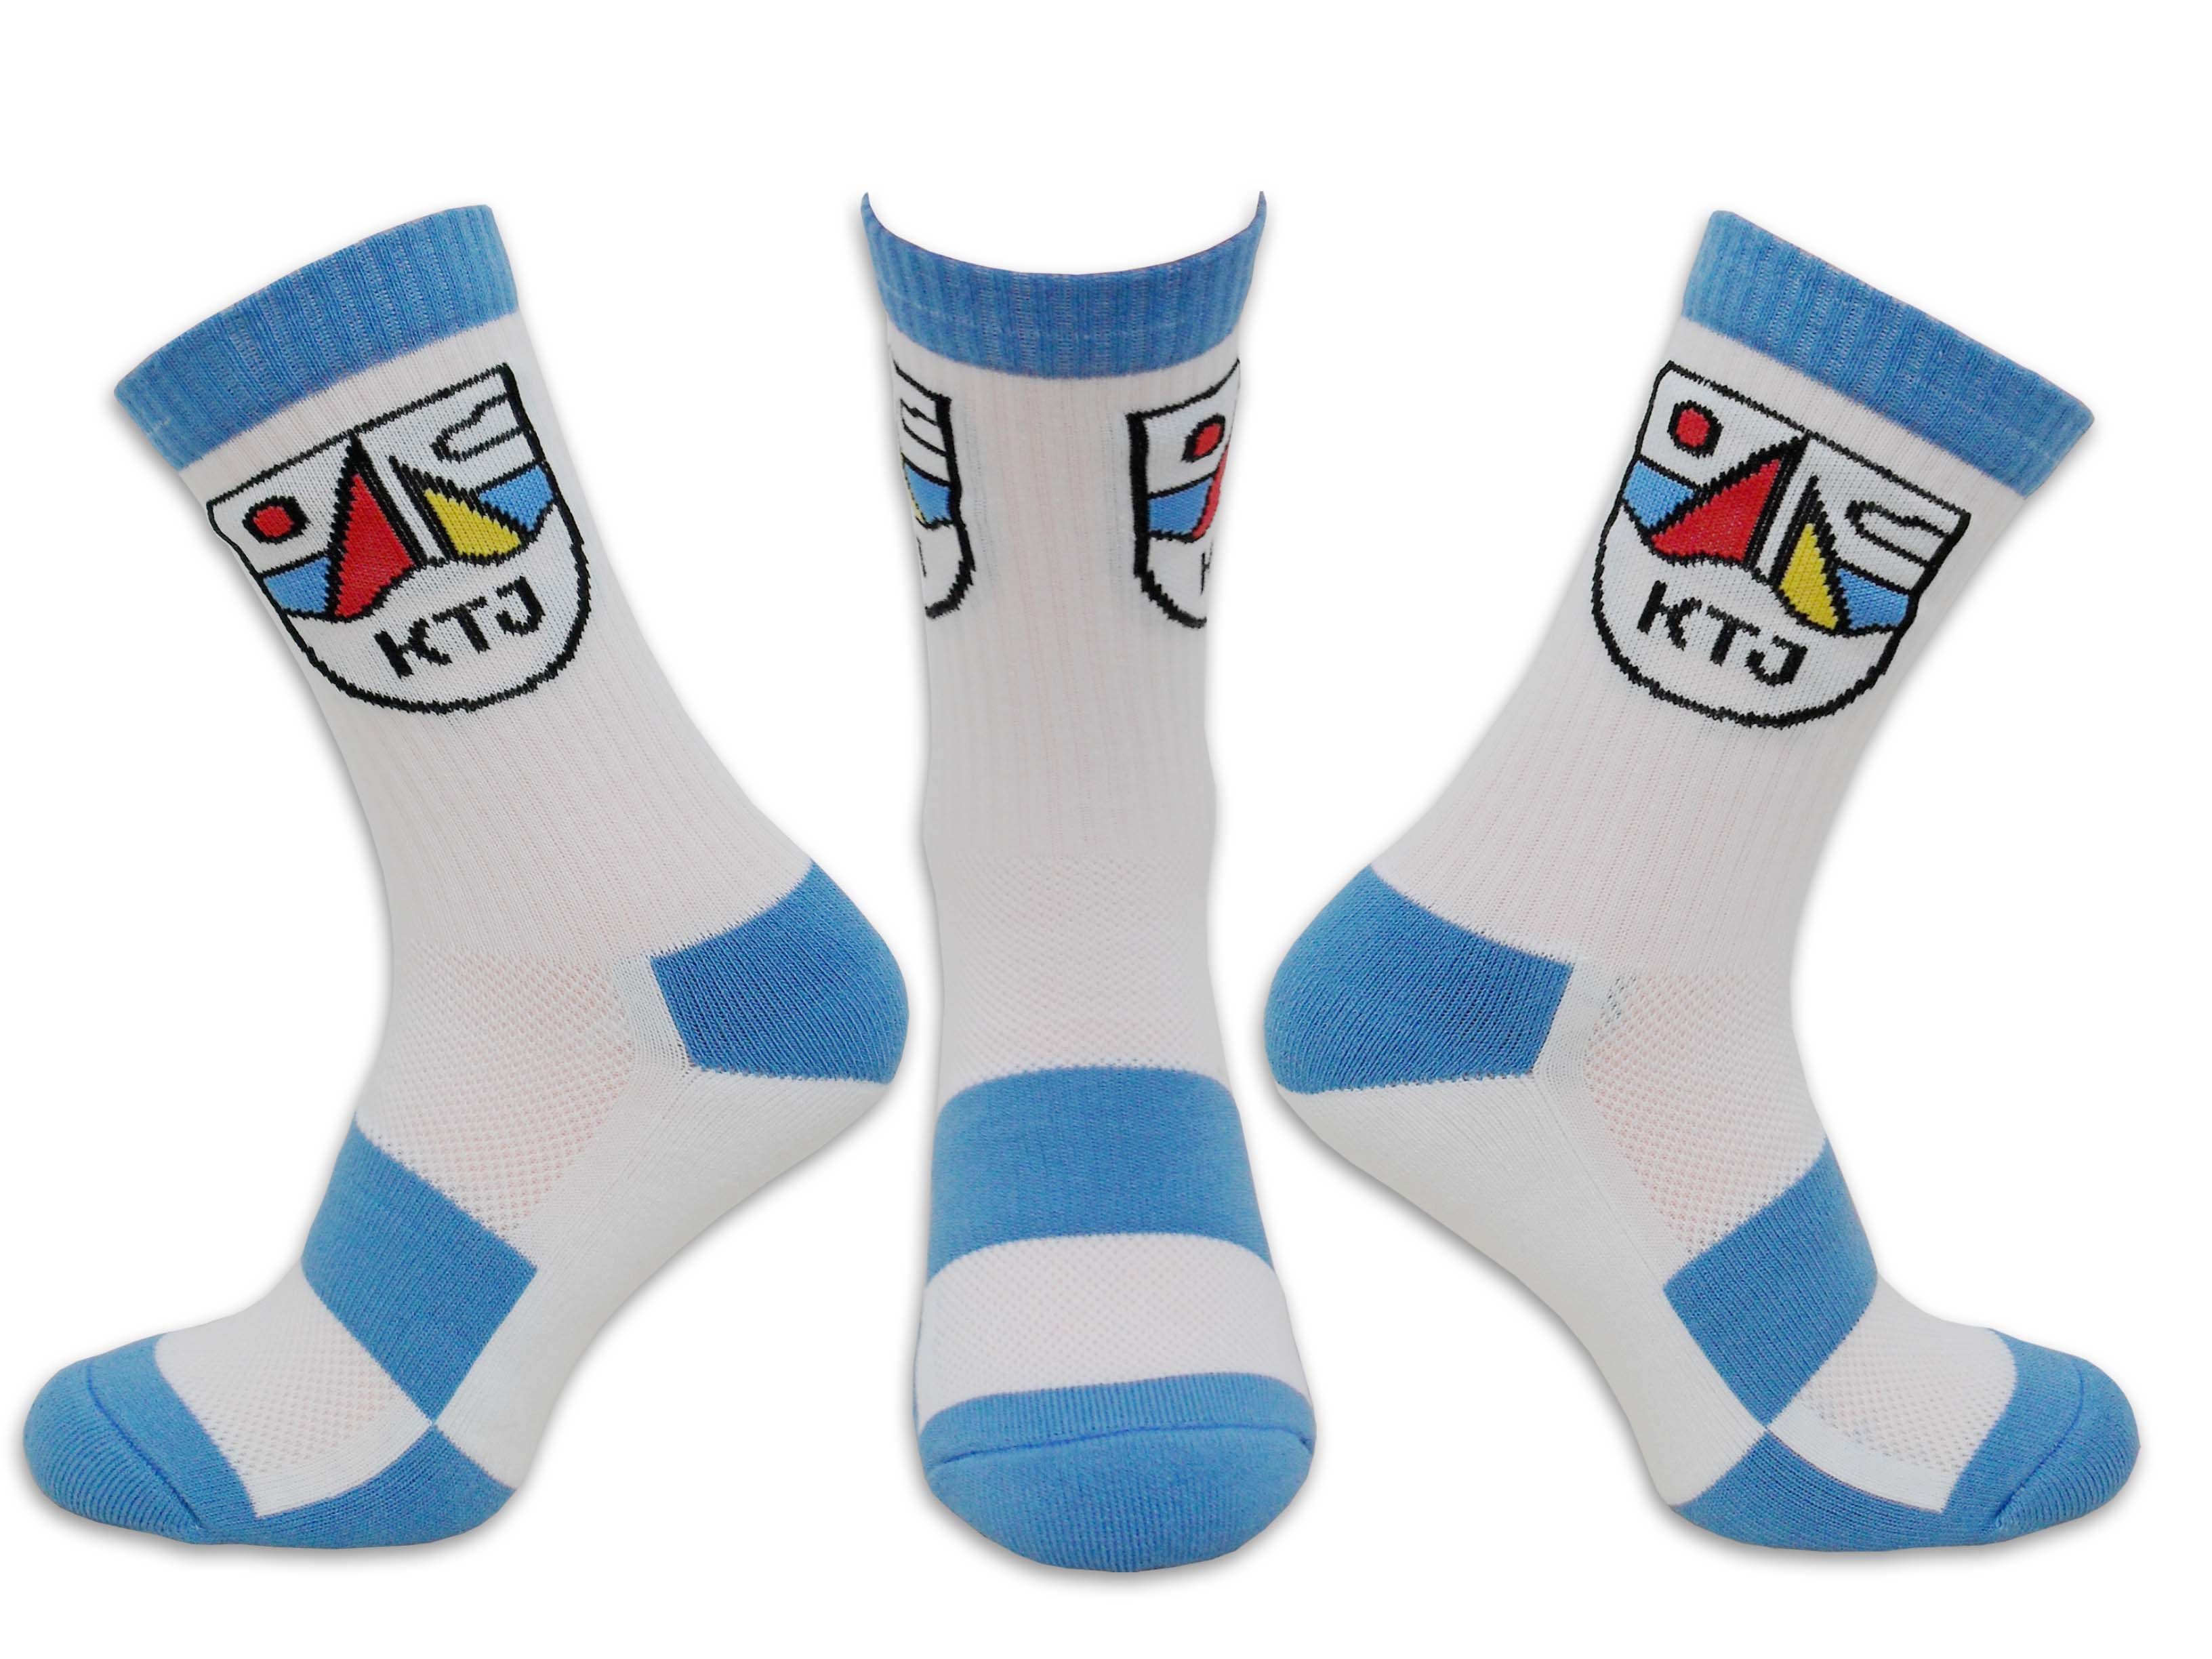 Personalisierte Socken für Firmen, Vereine und Behörden